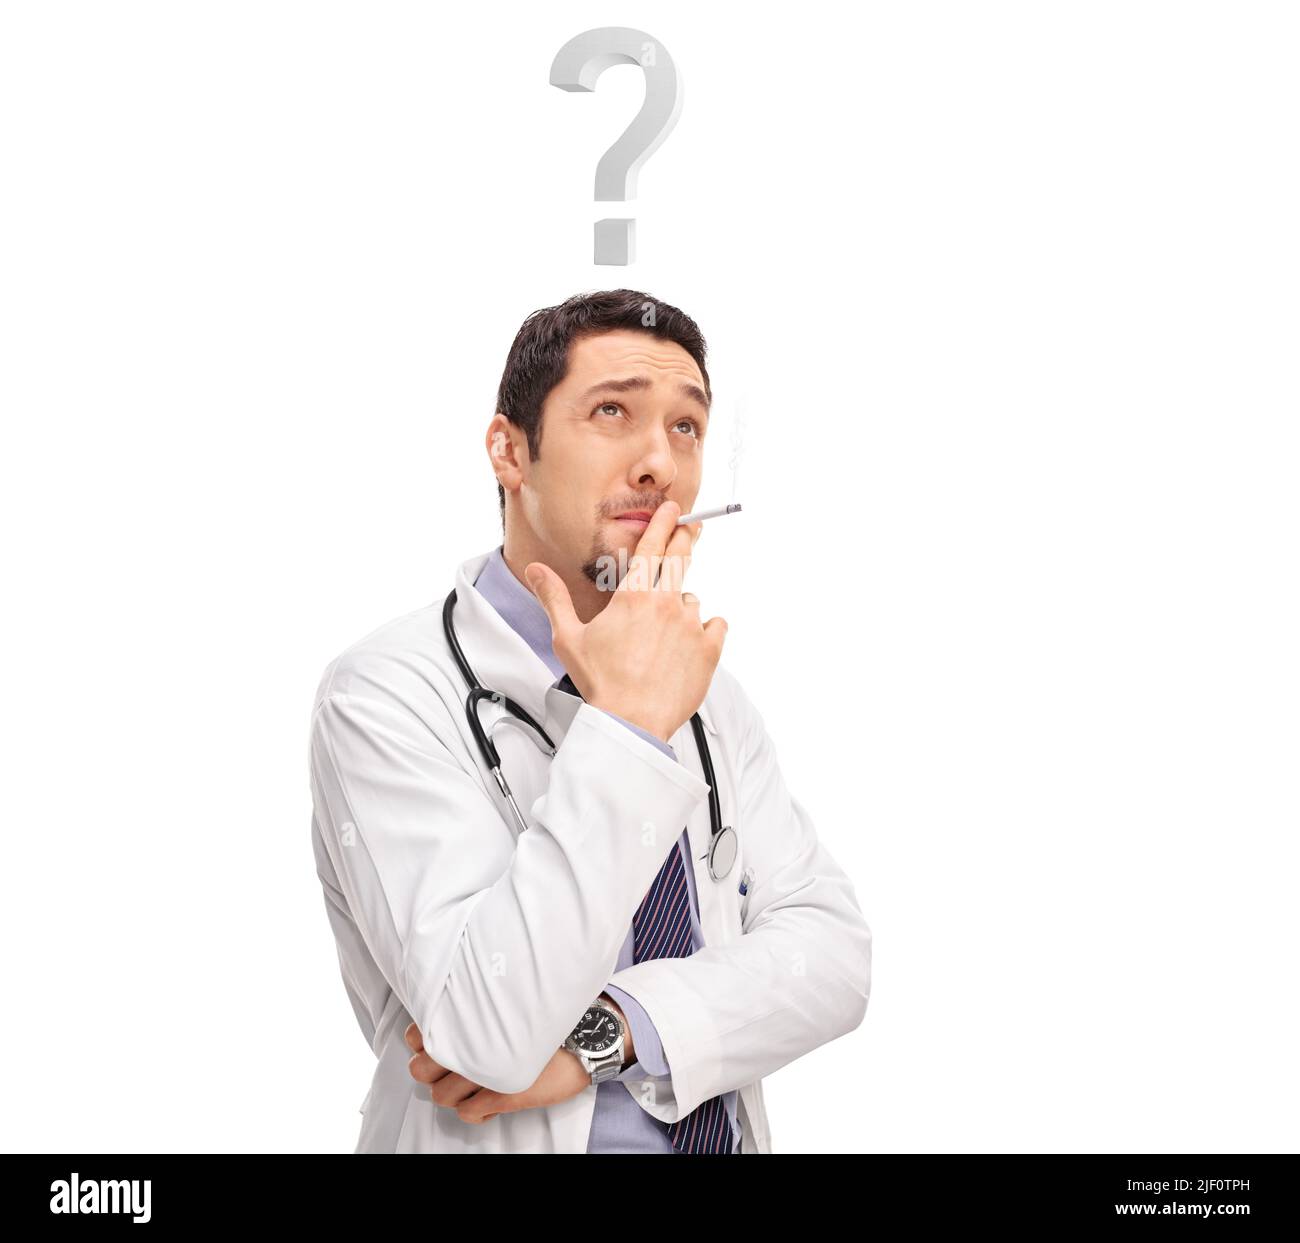 Il medico fuma una sigaretta e pensa con un punto interrogativo sopra la testa isolato su sfondo bianco Foto Stock